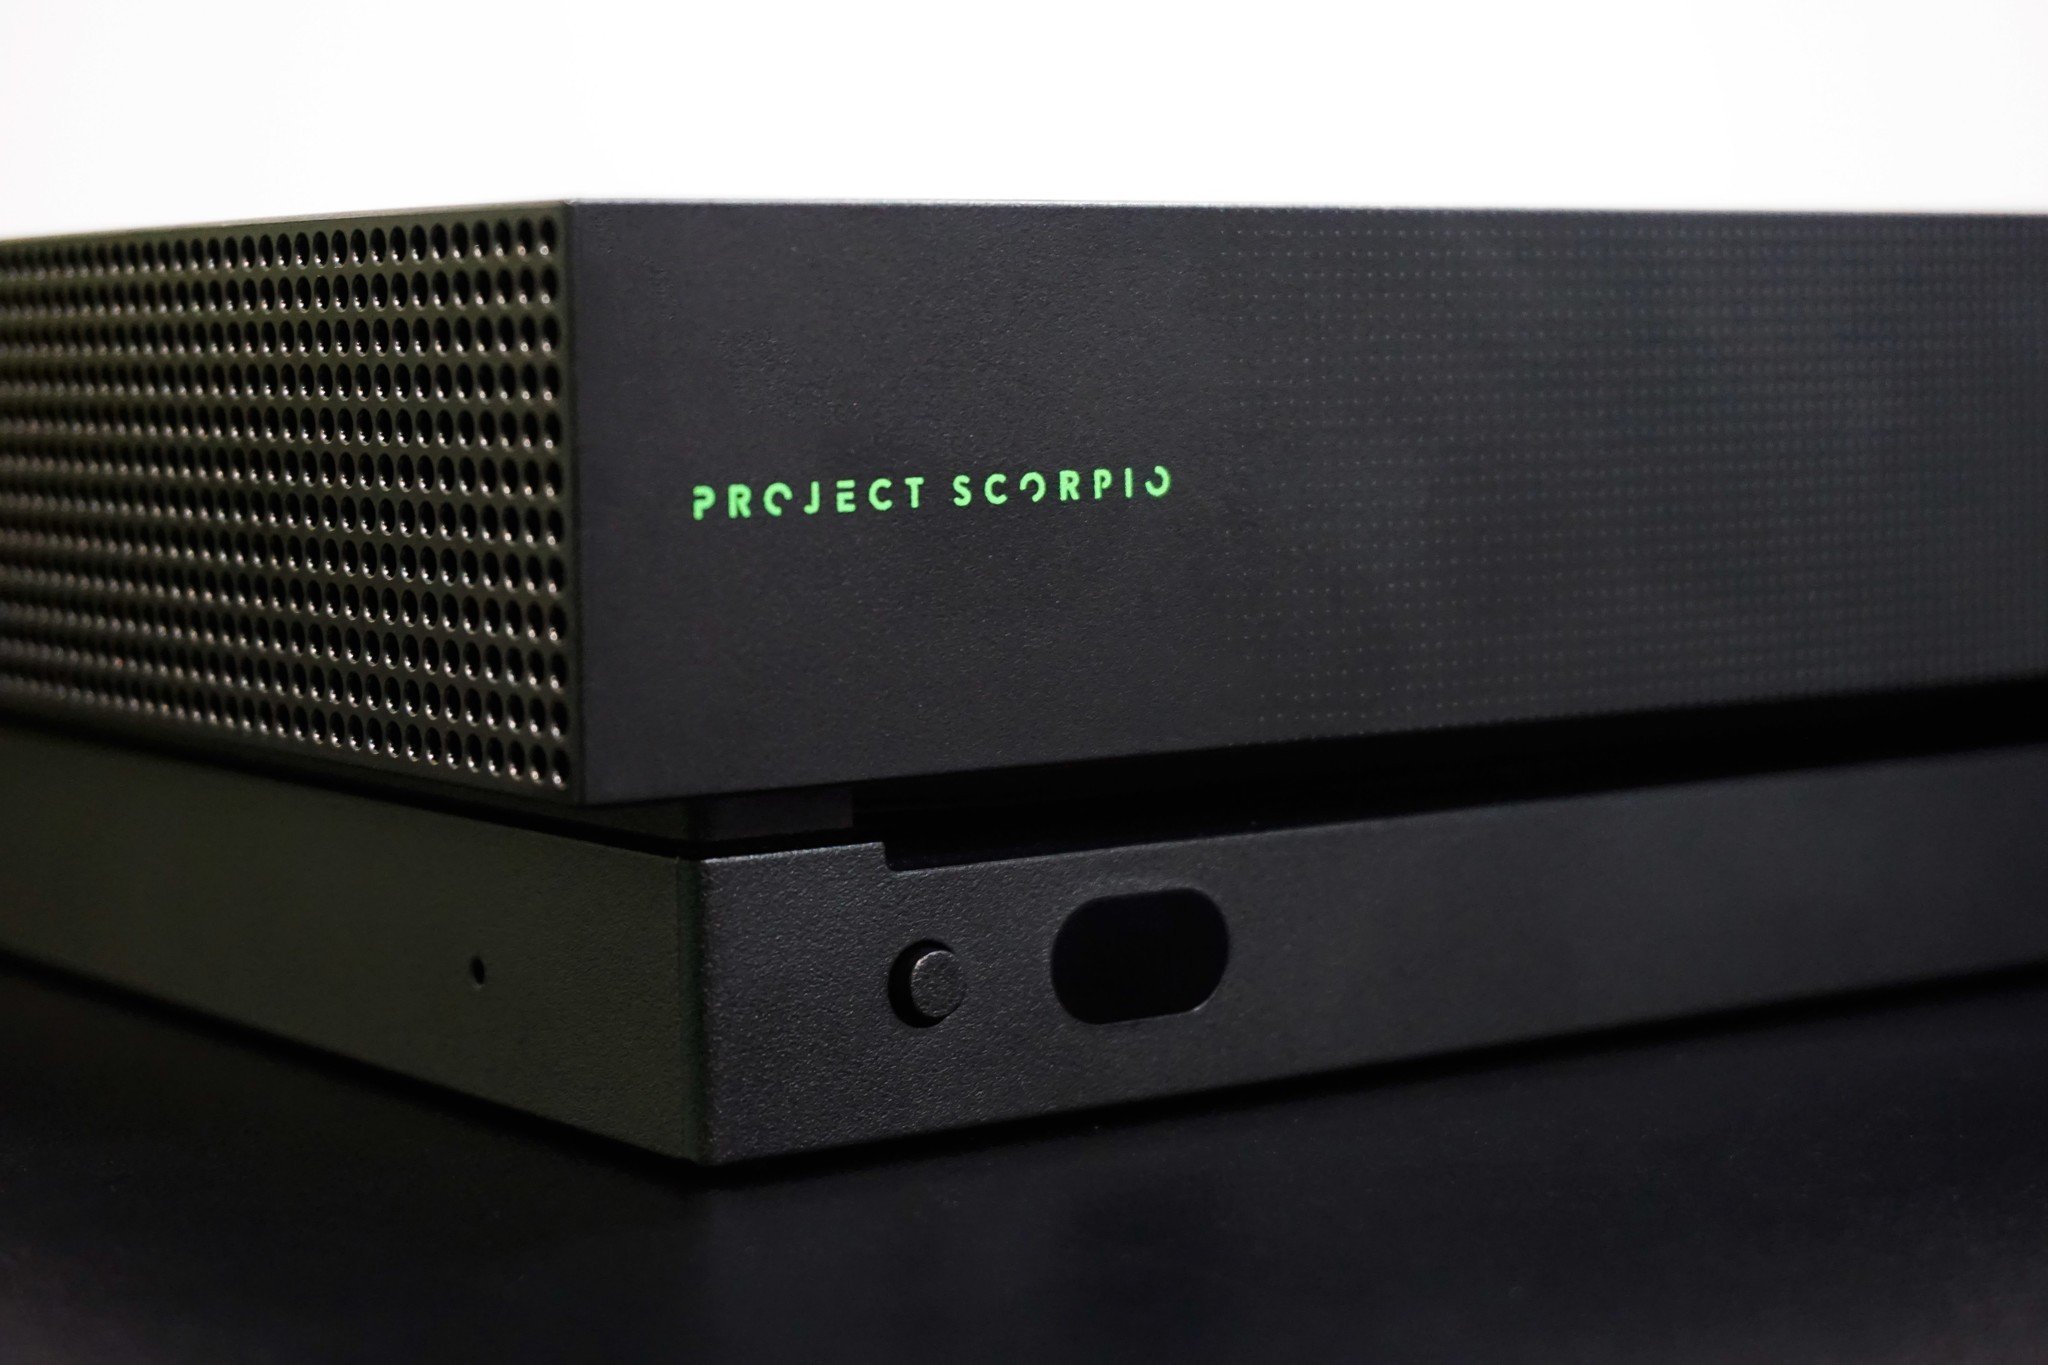 xbox one x project scorpio edition